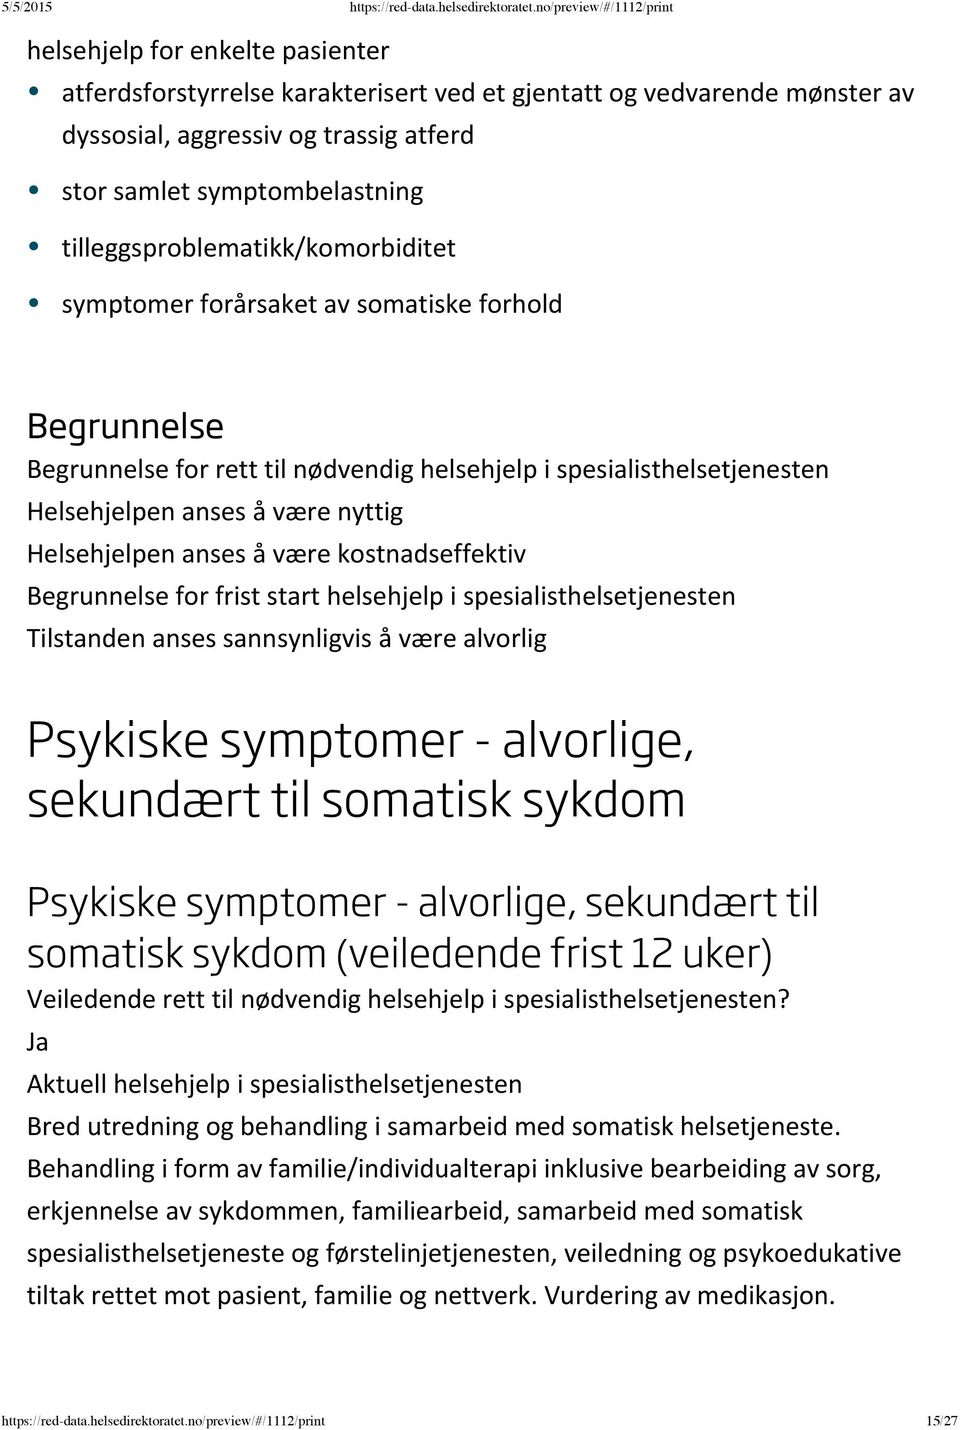 å være alvorlig Psykiske symptomer - alvorlige, sekundært til somatisk sykdom Psykiske symptomer - alvorlige, sekundært til somatisk sykdom (veiledende frist 12 uker) Bred utredning og behandling i